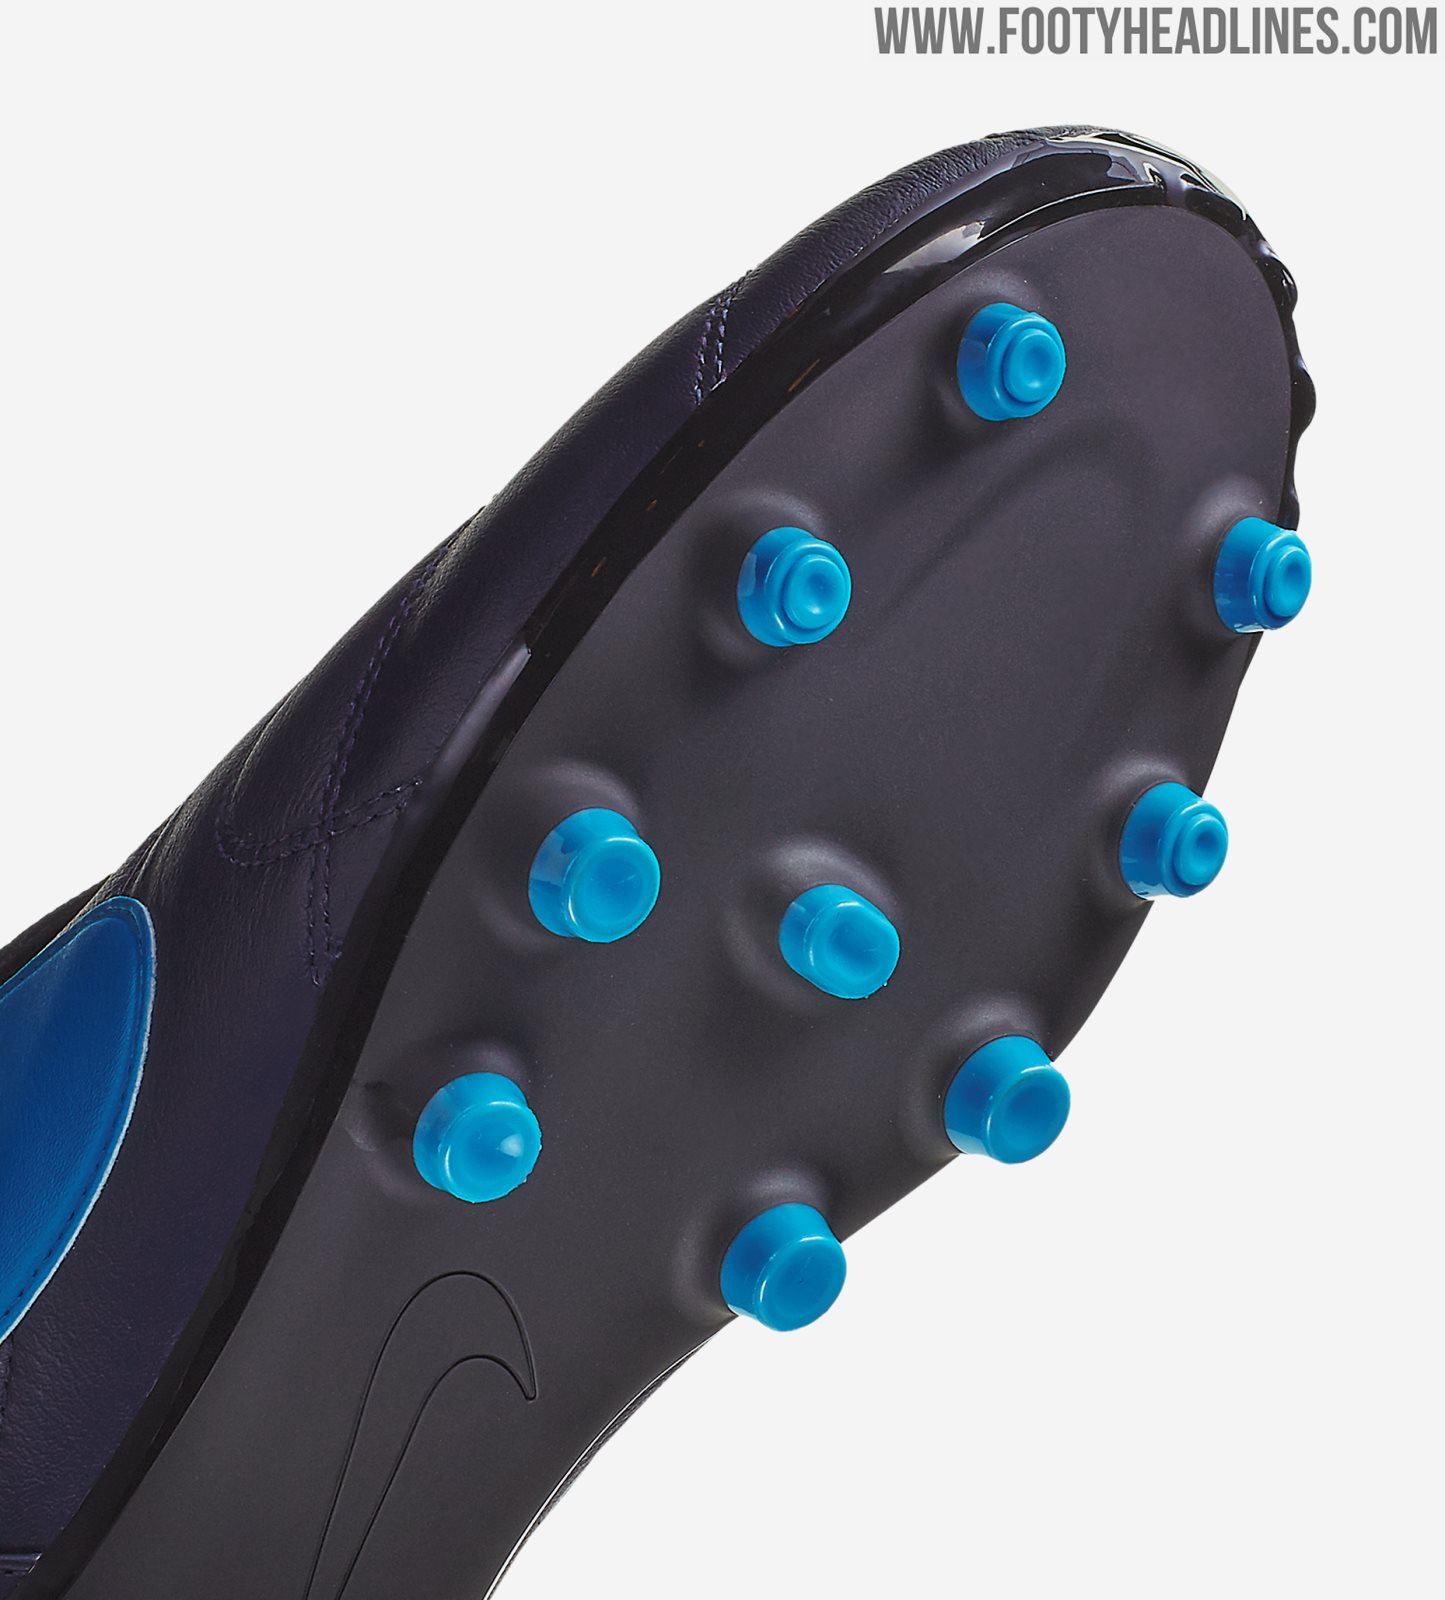 Navy / Light Blue Nike Premier II 2019-20 Boots Revealed - Footy Headlines